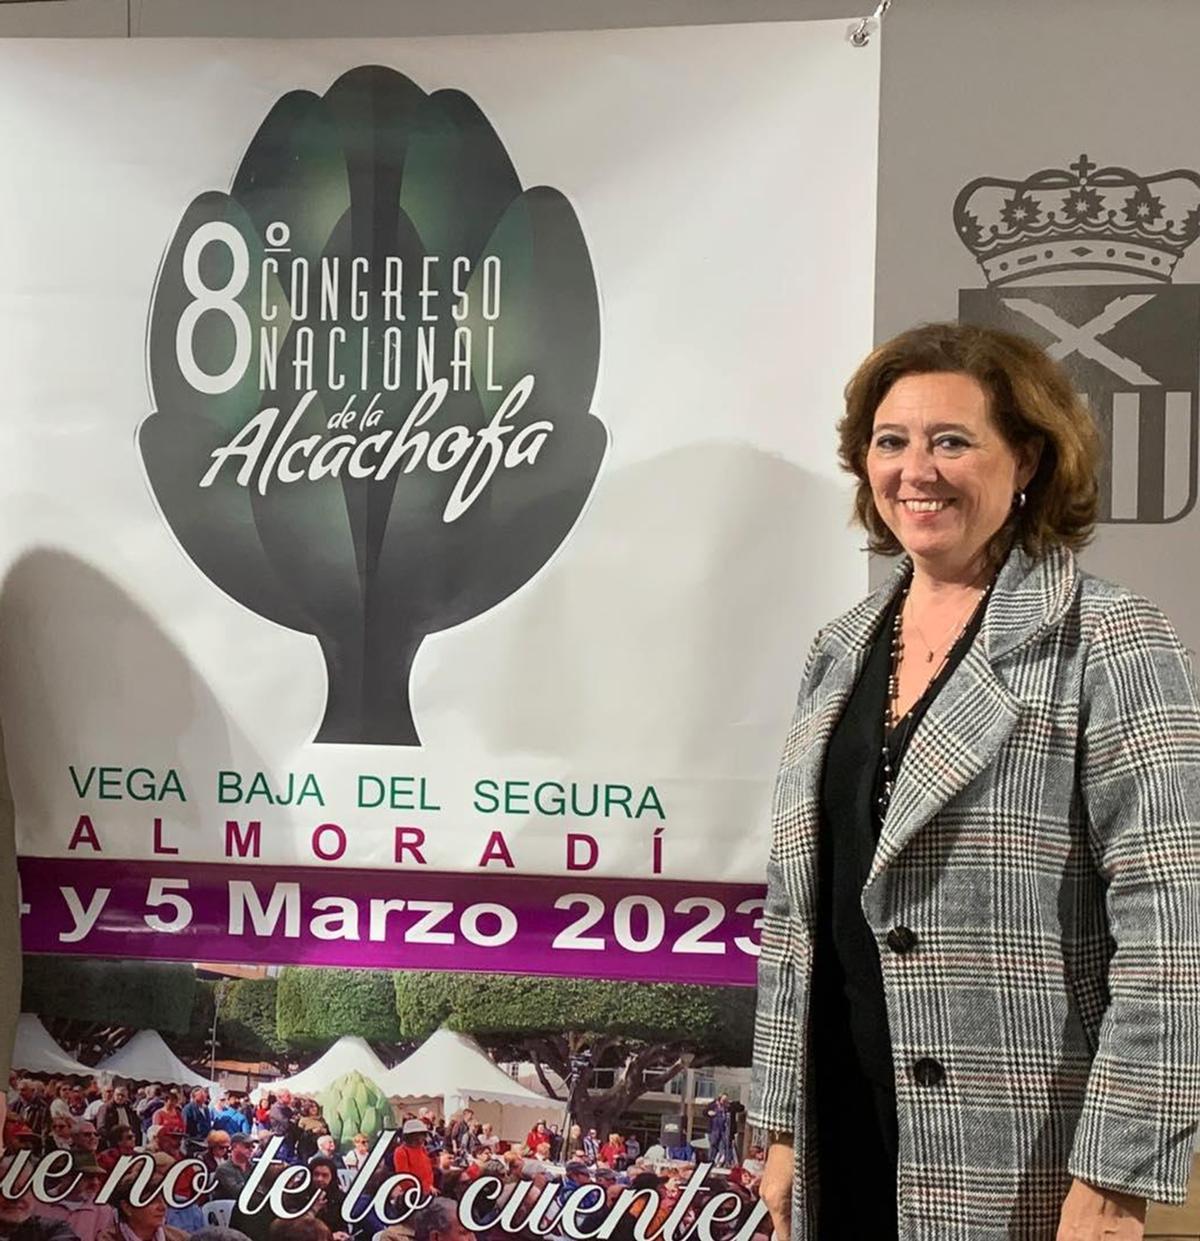 María Gómez, alcaldesa de Almoradí, presenta el 8ª Congreso Nacional de la Alcachofa.